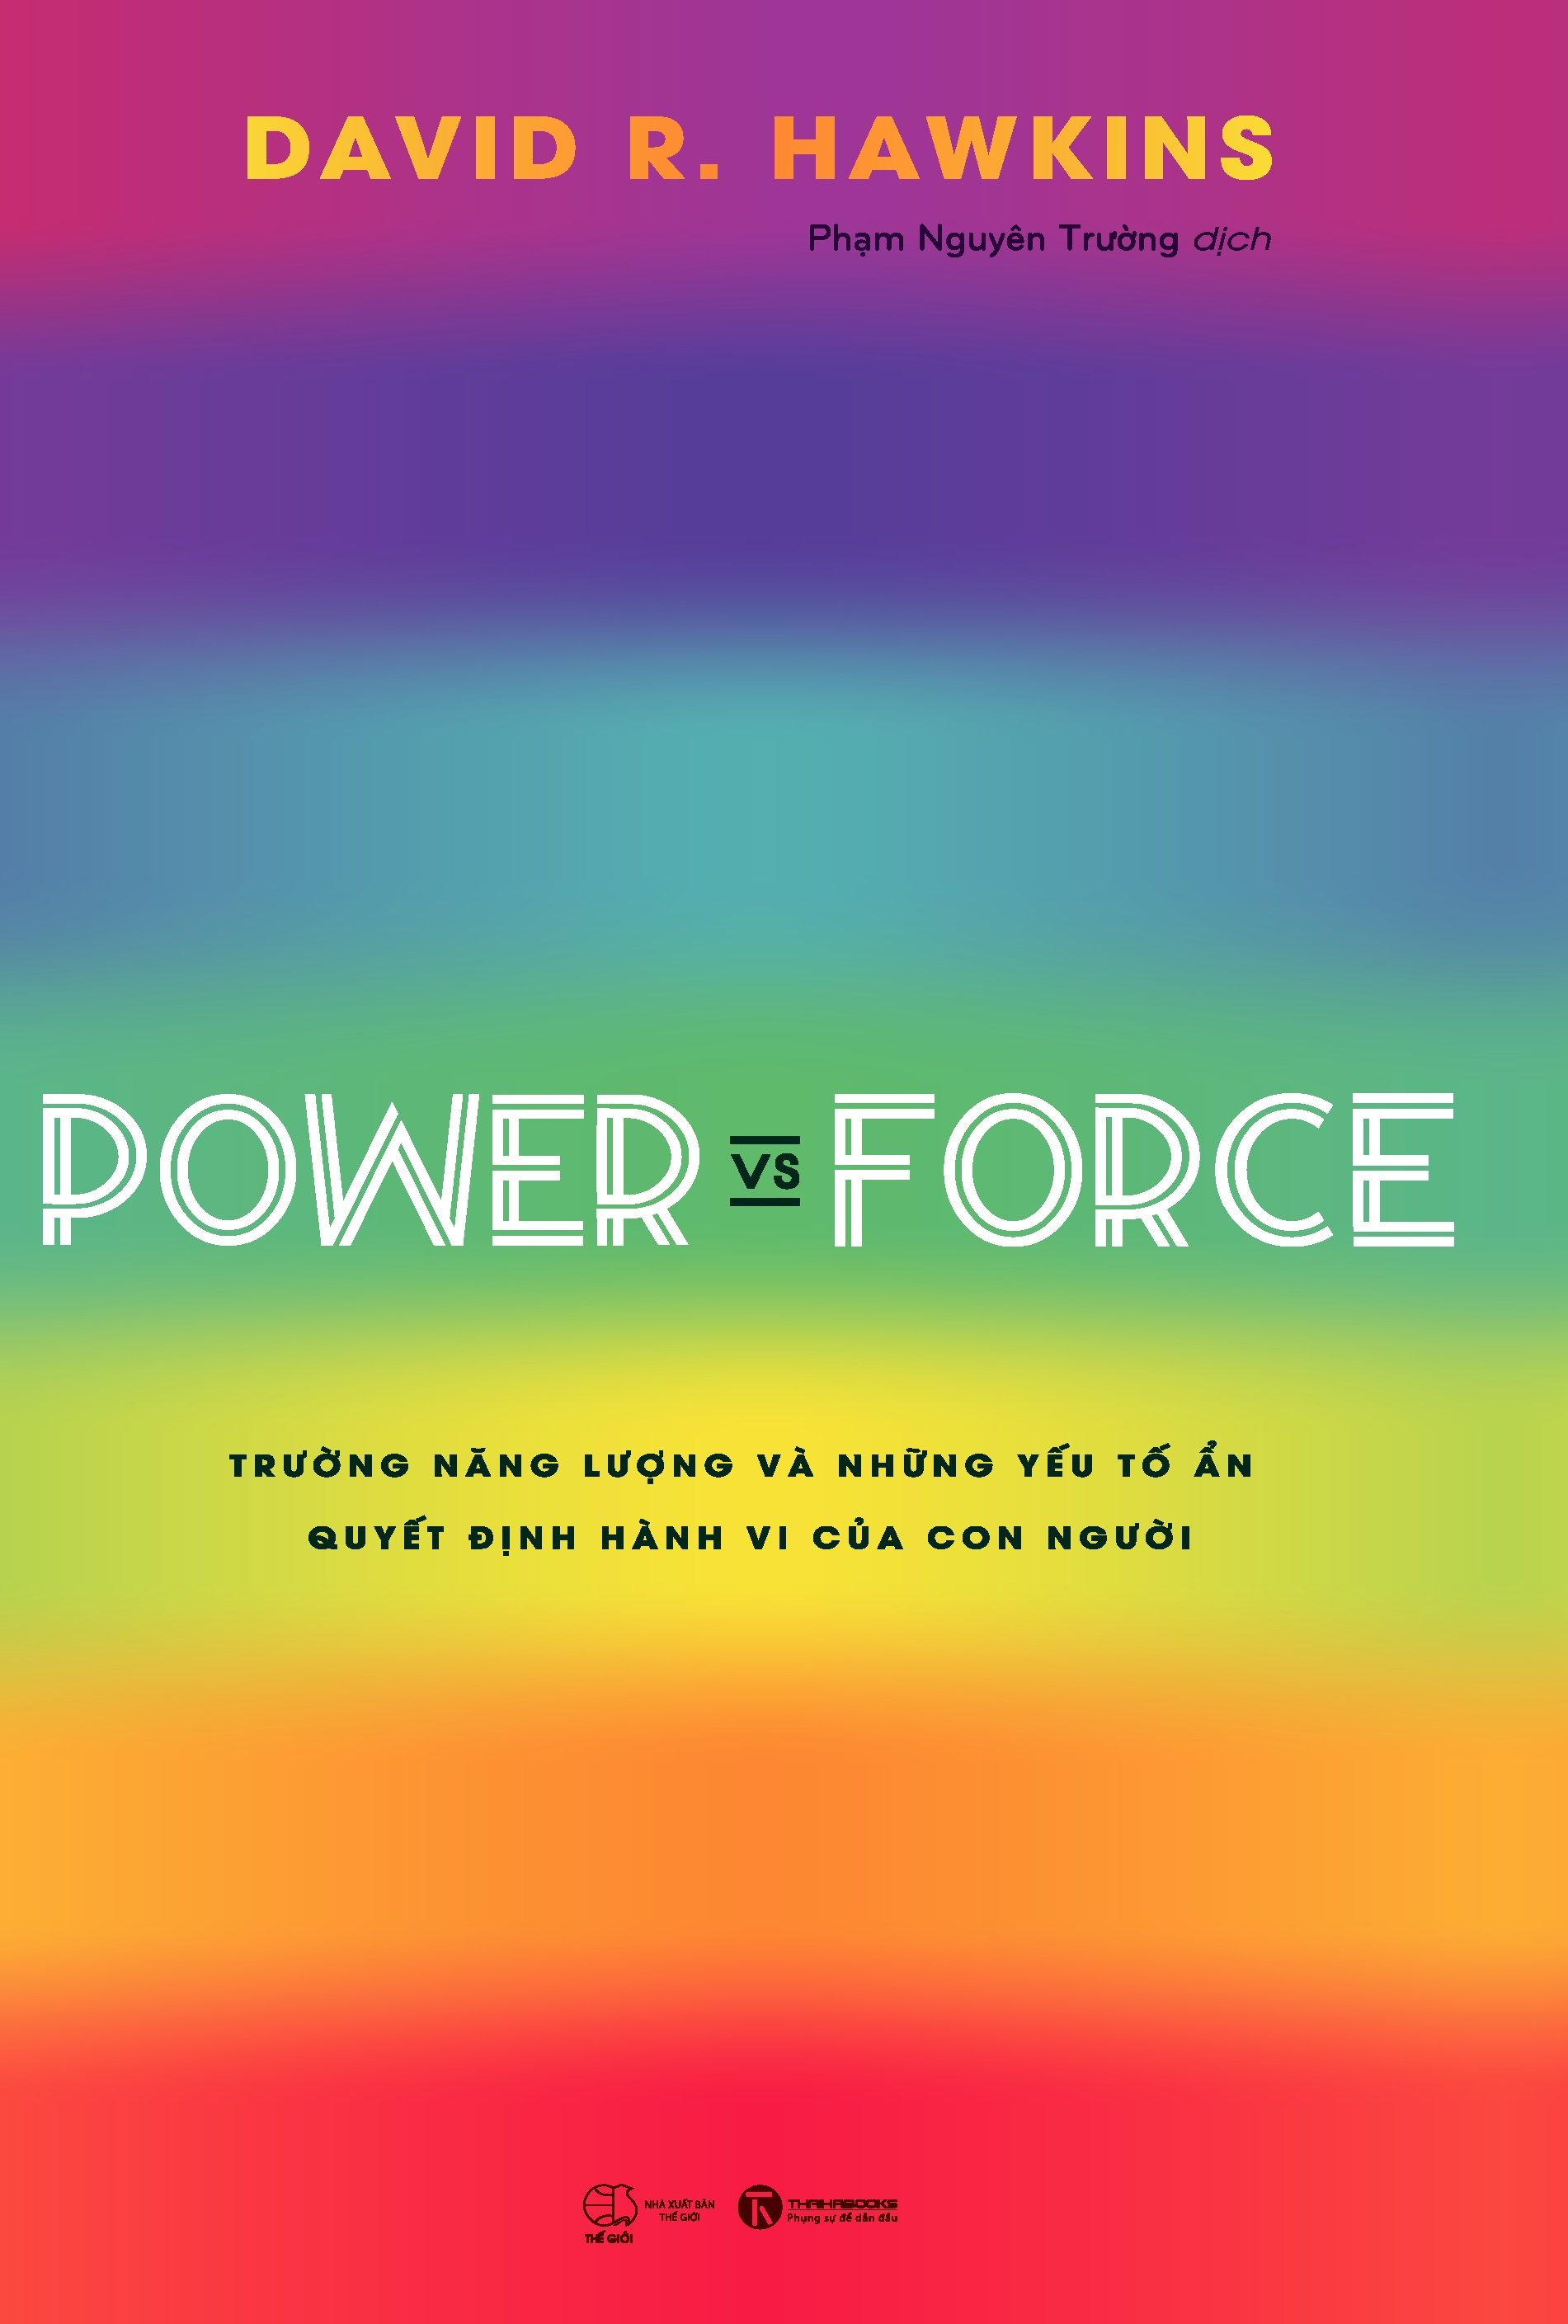 Power Vs Force - Trường Năng Lượng Và Những Nhân Tố Quyết Định Hành Vi Của Con Người PDF